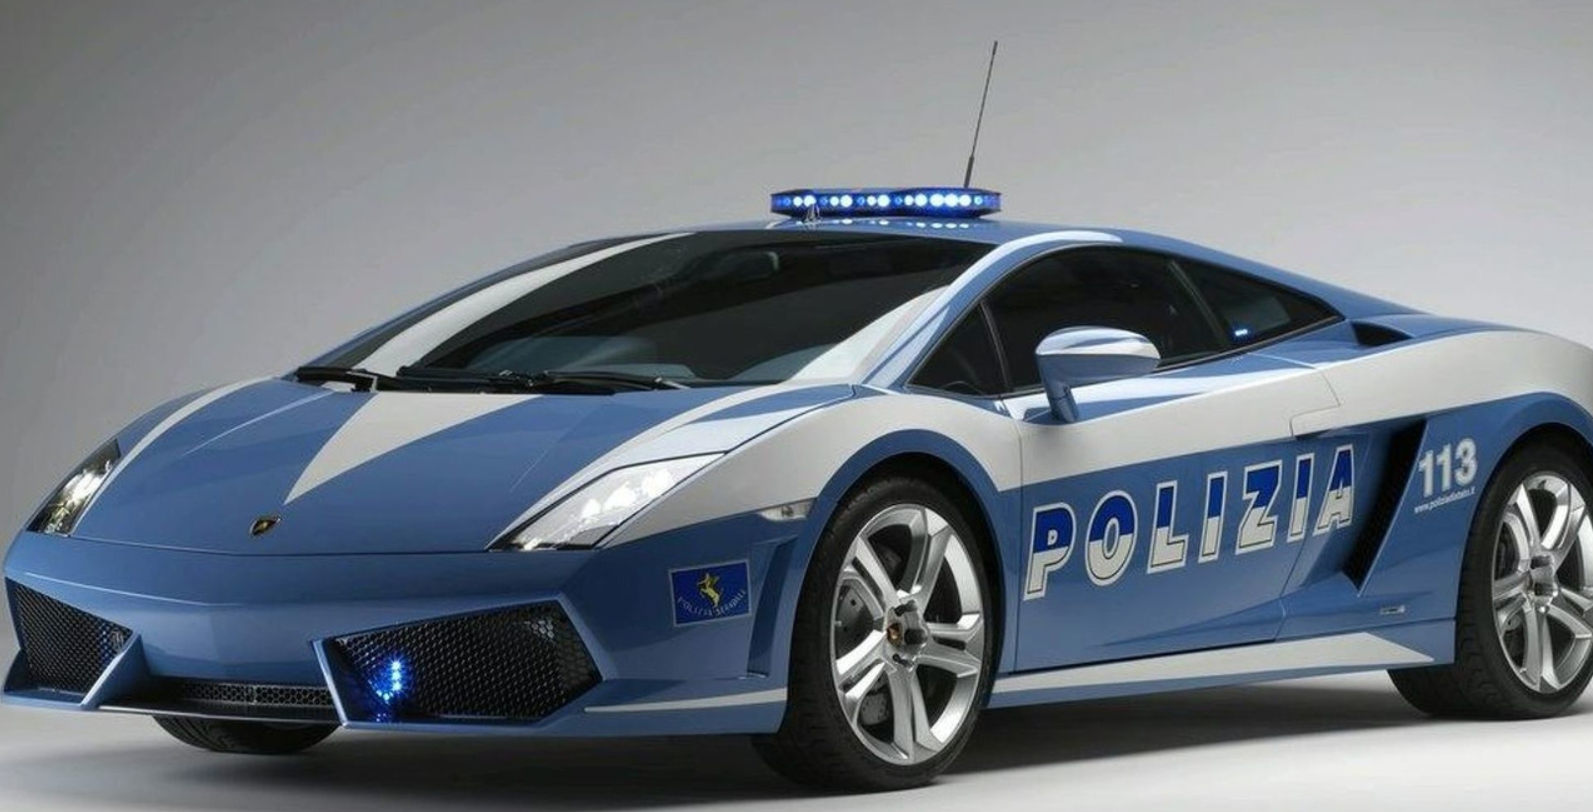 Gallardo 2003 coupé Polizia